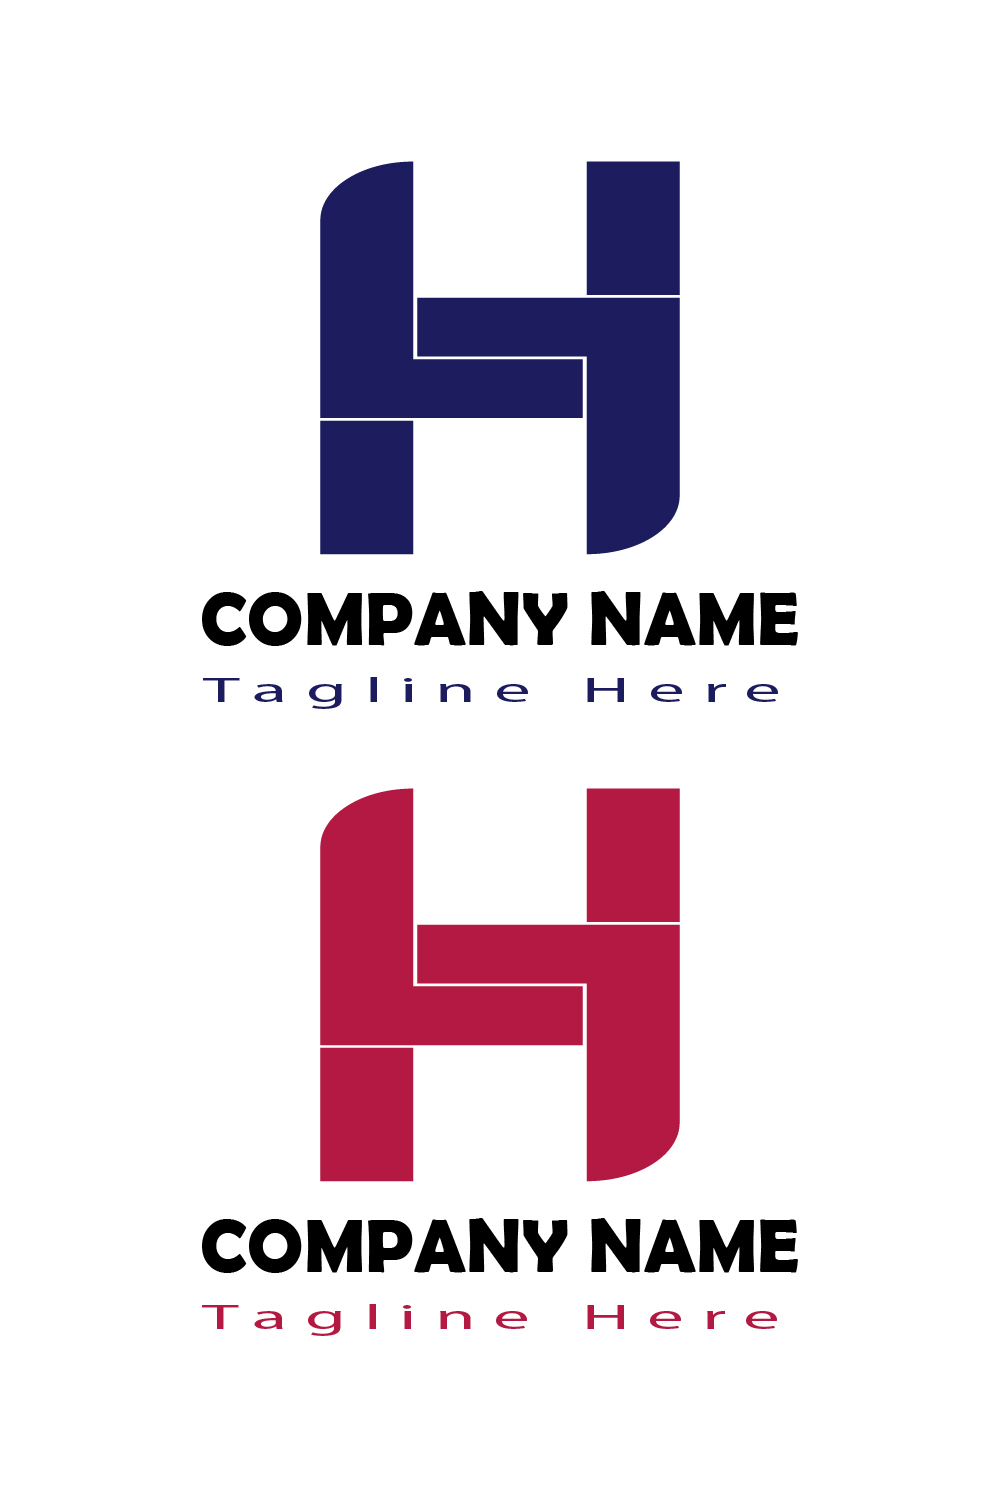 H Letter Logo Pinterest image.